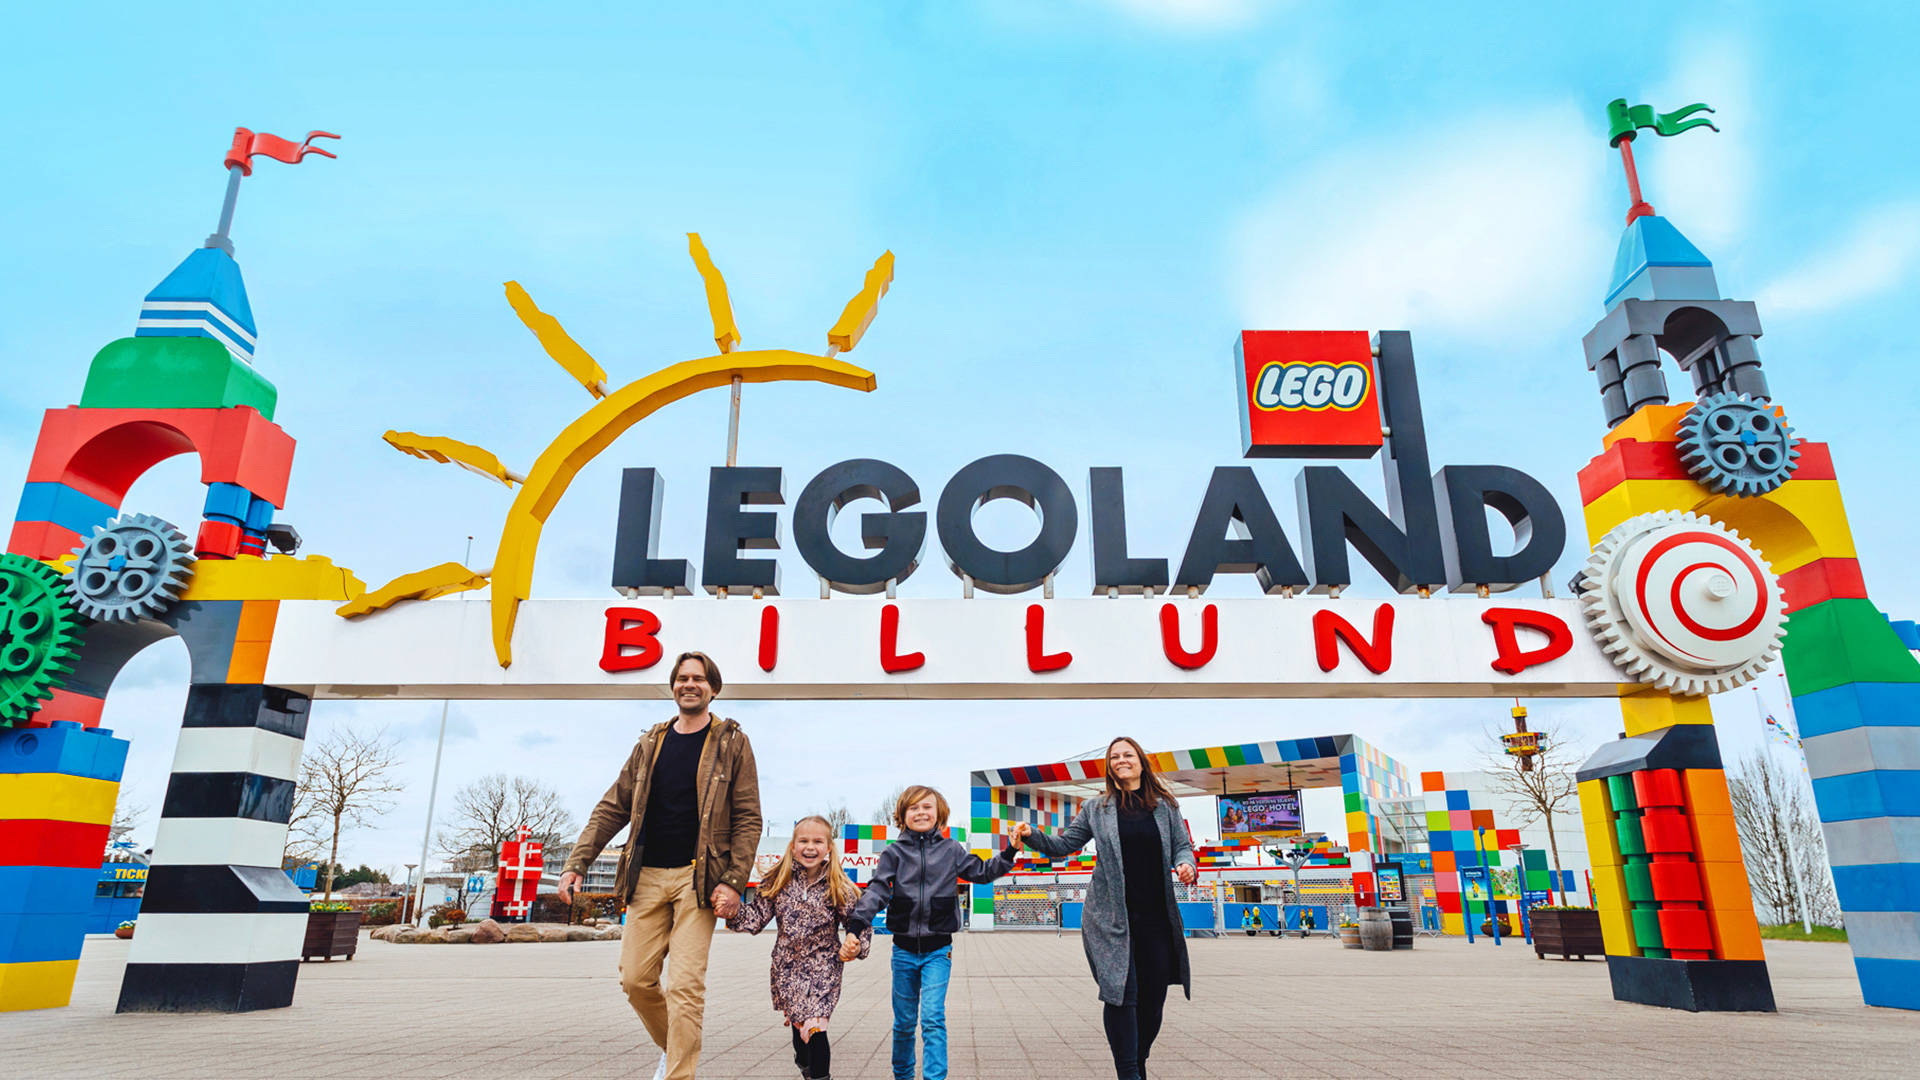 Family At Legoland Billund Wallpaper